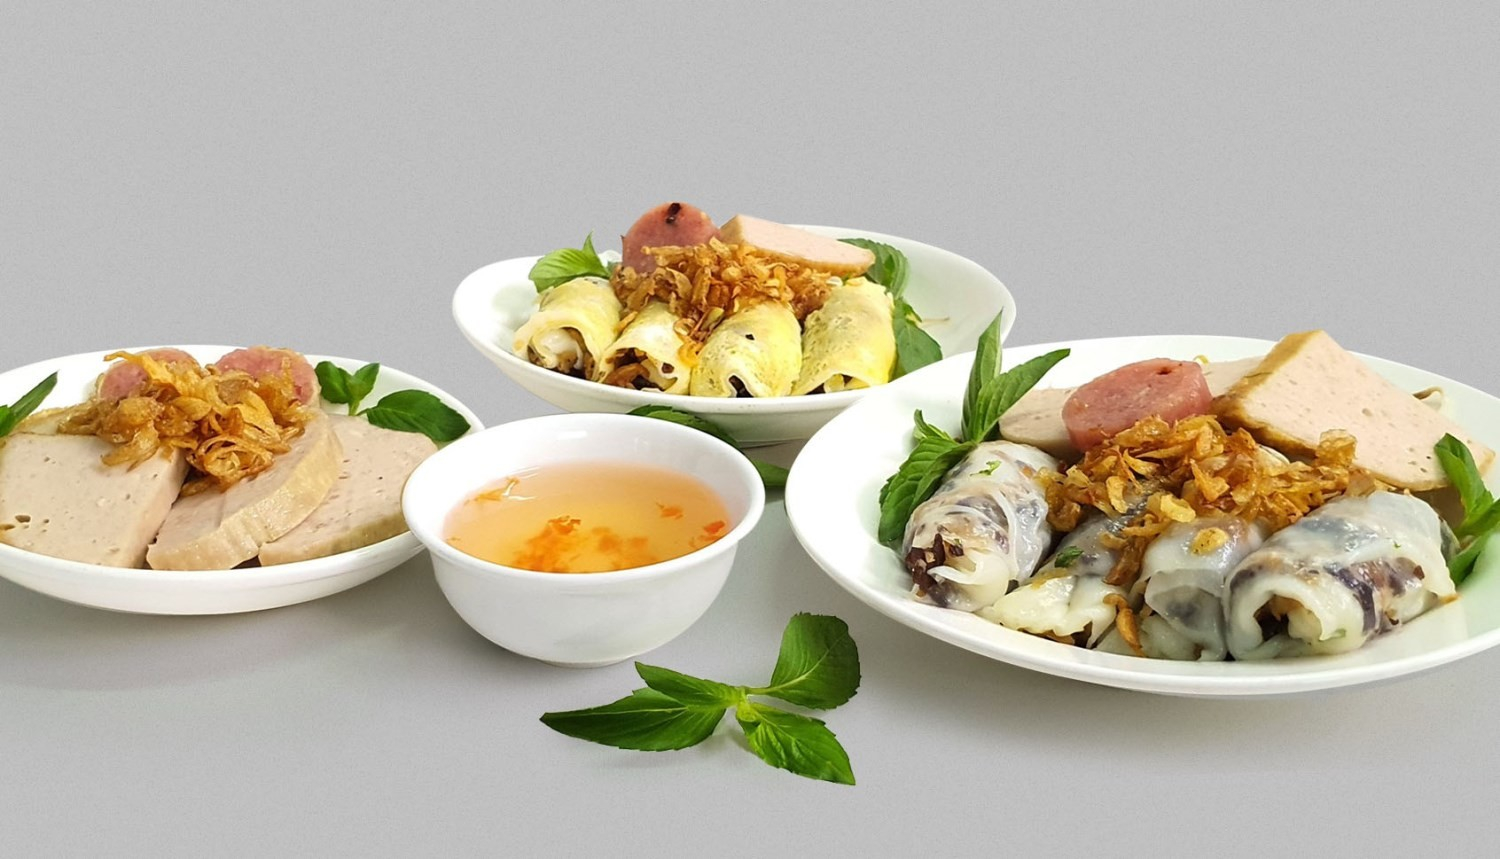 Bánh Cuốn Trứng - 55/19 Vạn Kiếp ở Quận Bình Thạnh, TP. HCM | Foody.vn